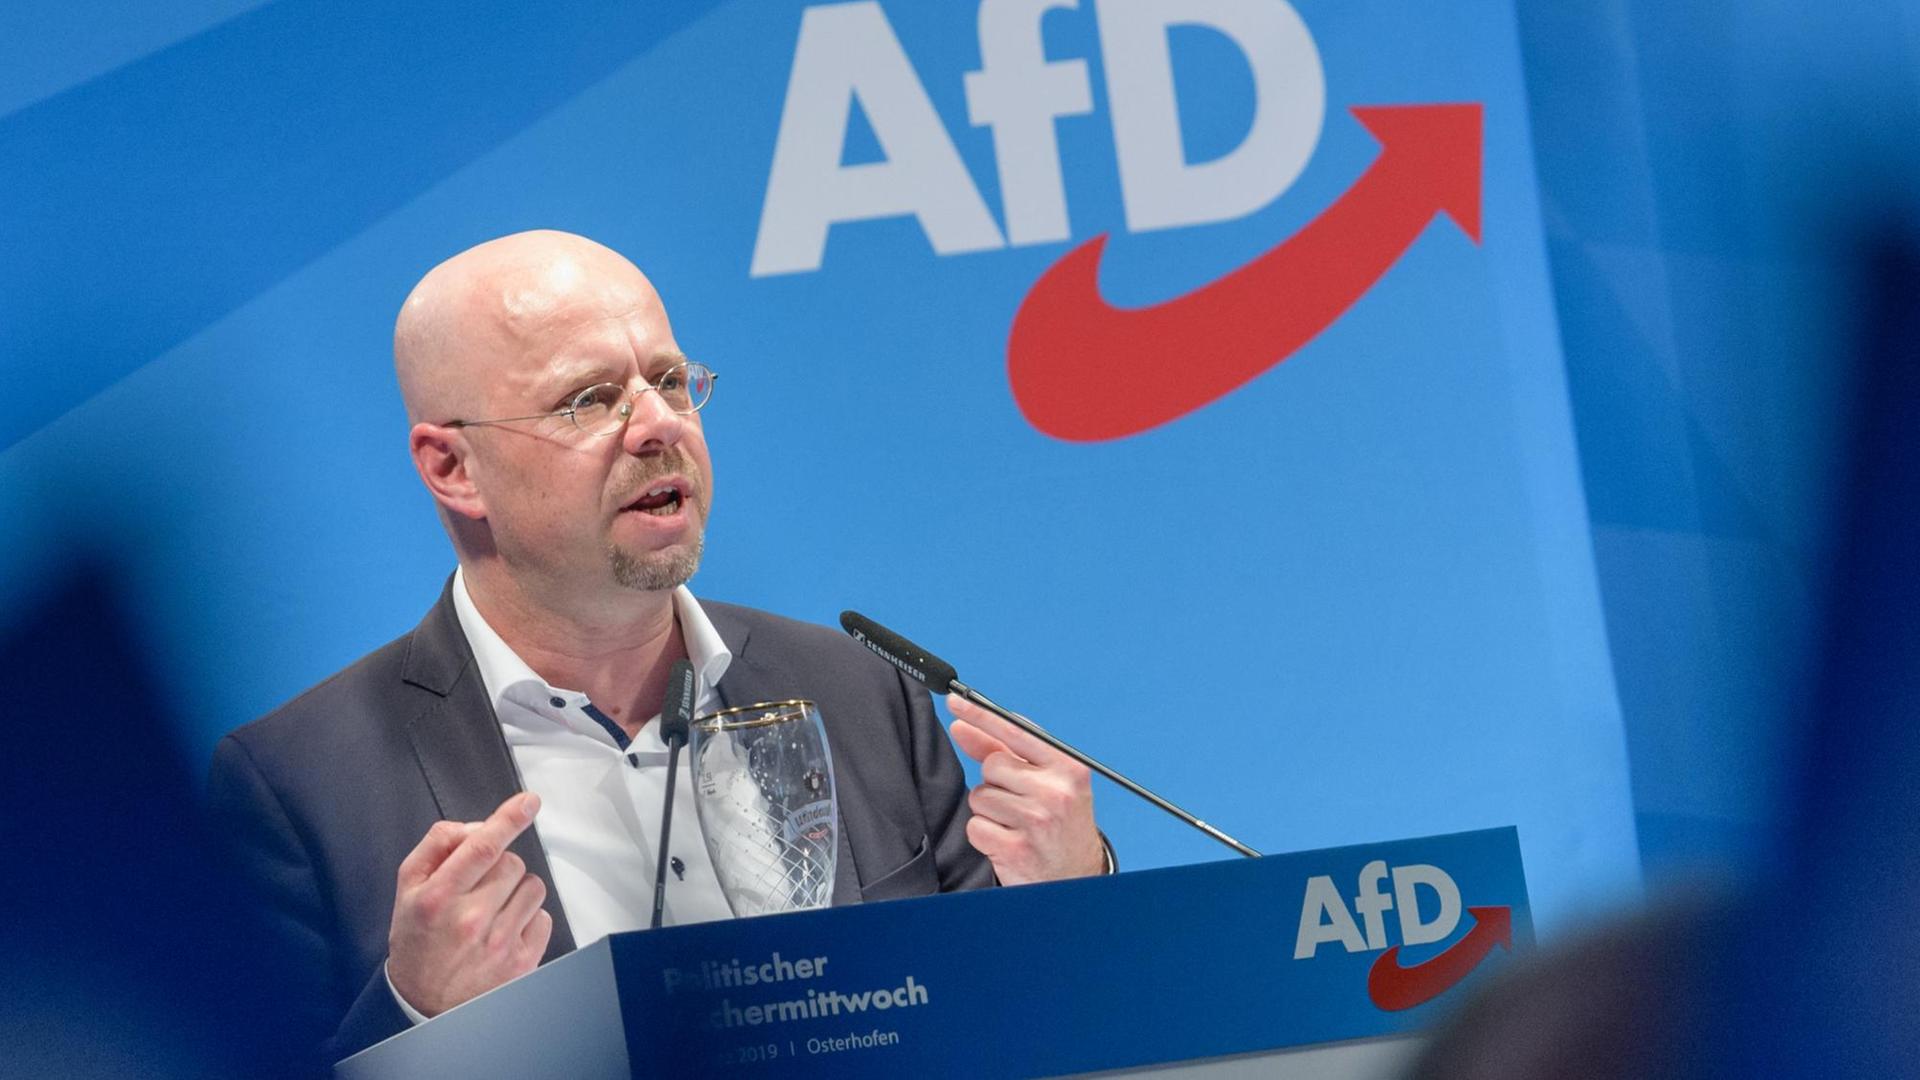 Andreas Kalbitz, Spitzenkandidat der AfD für die Landtagswahl in Brandenburg im September 2019, spricht beim politischen Aschermittwoch der AfD im bayrischen Osterhofen.